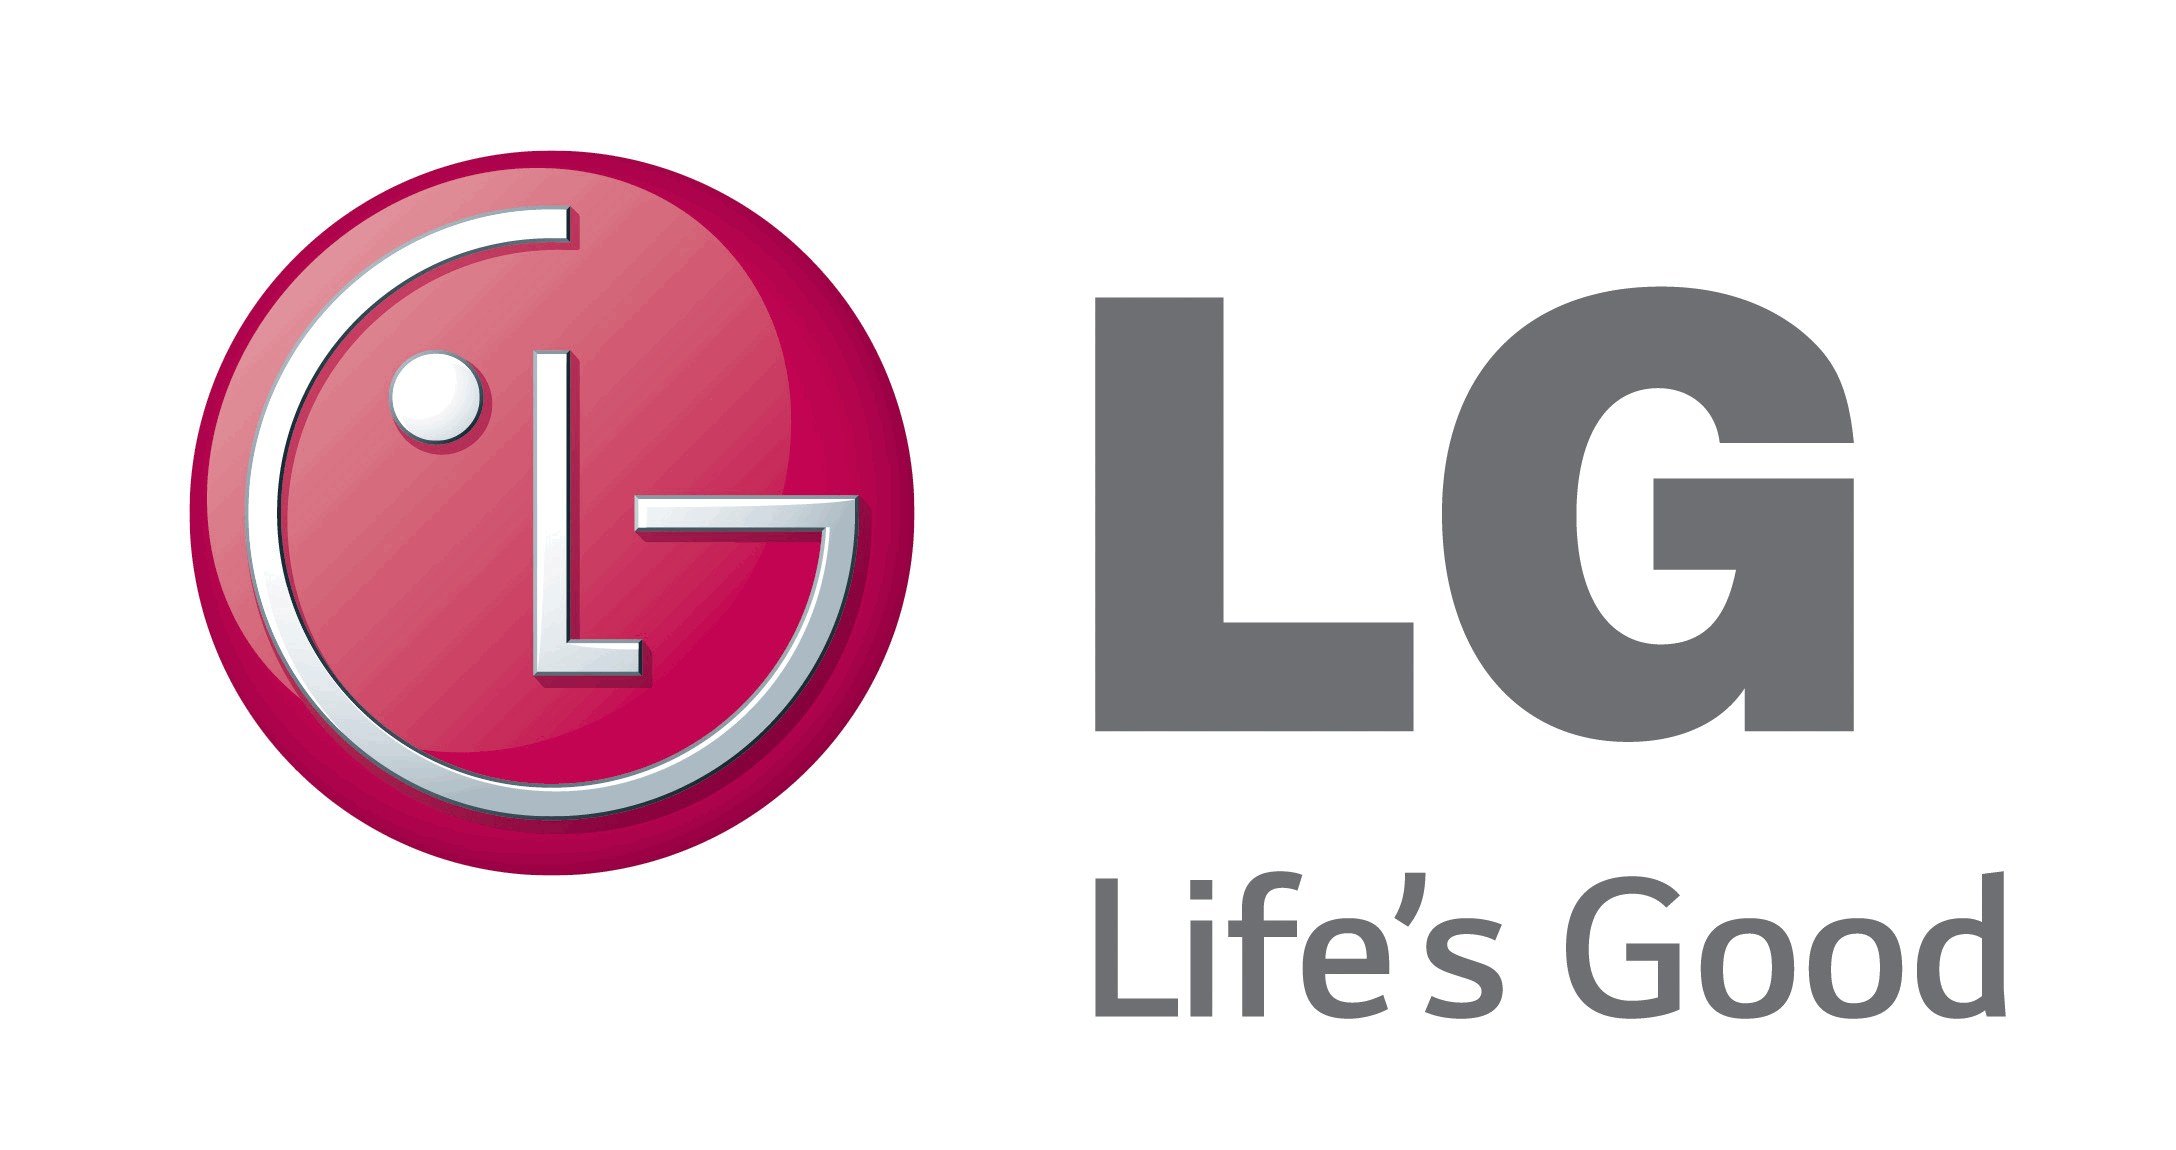 LG GW520 inTouch bateria sem carga